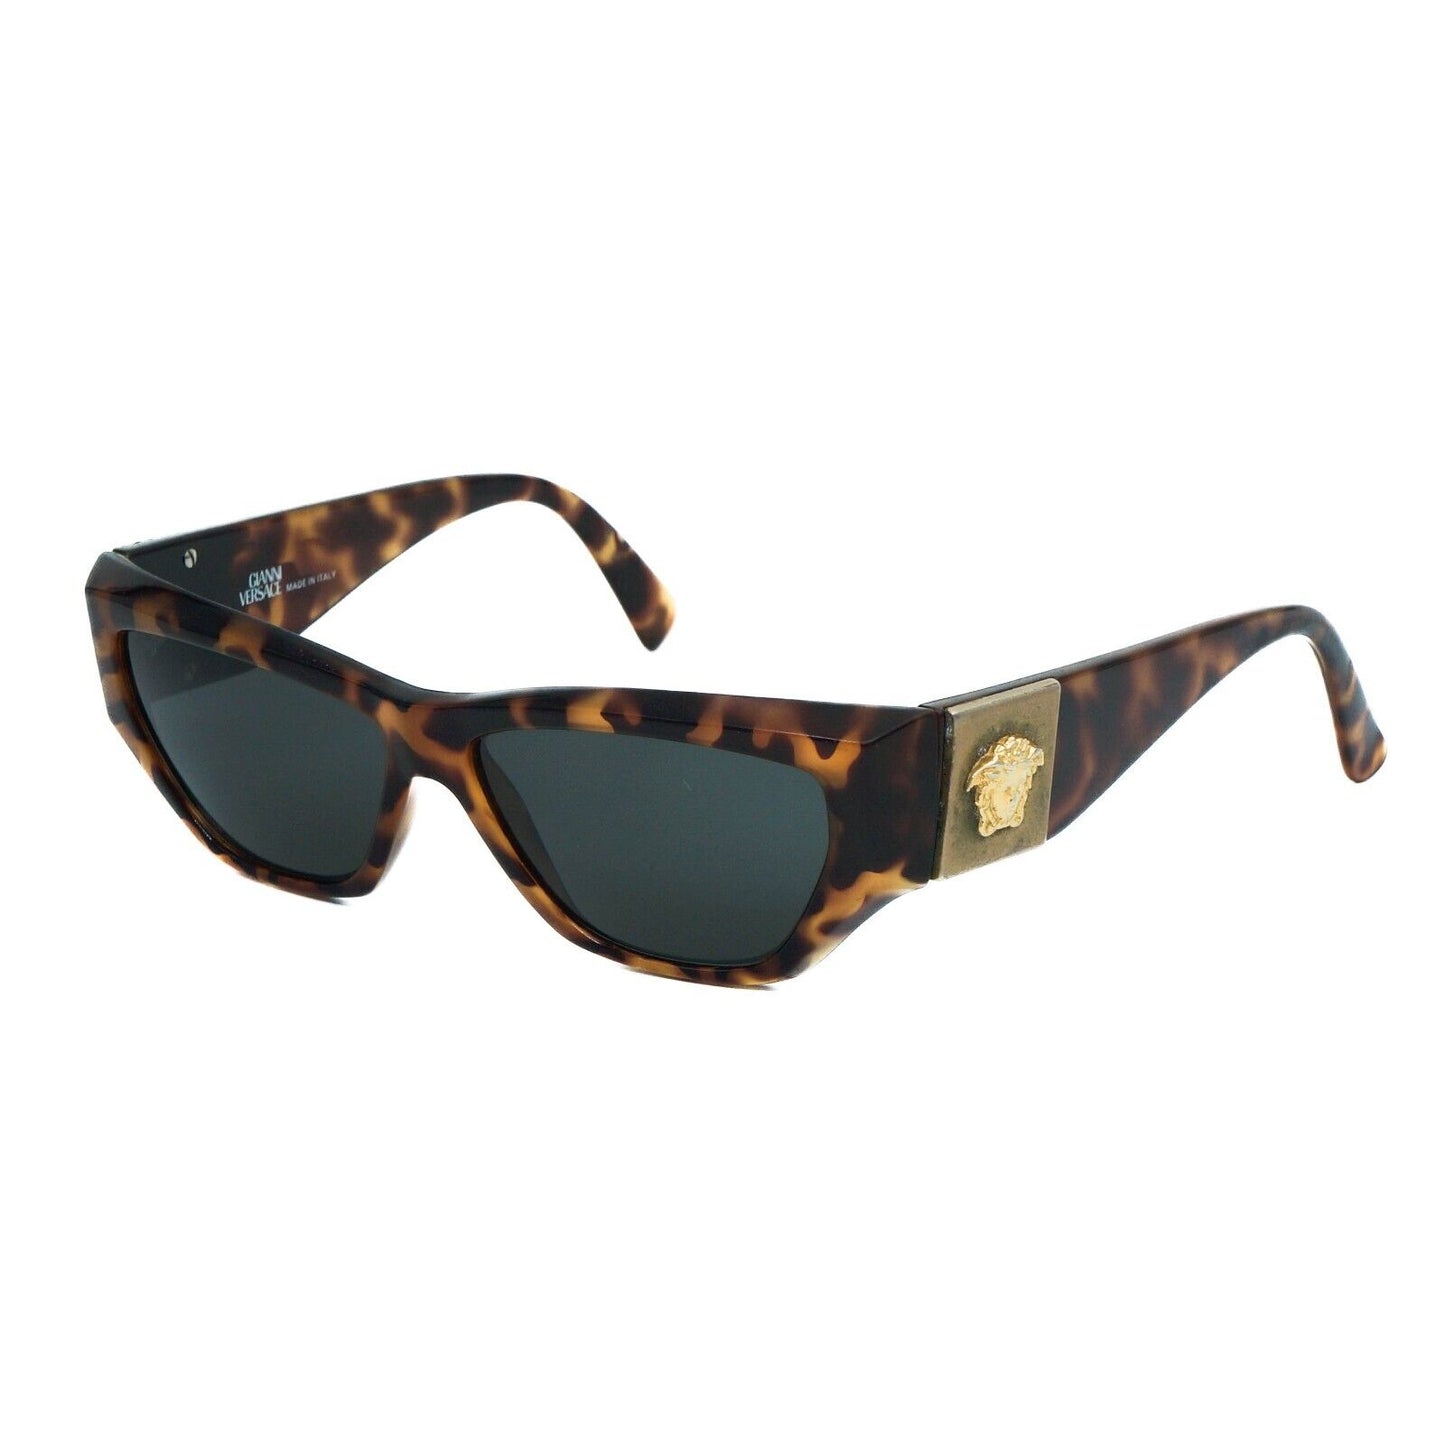 GIANNI VERSACE S89 Havana Brown Medusa Sunglasses VIntage 90s